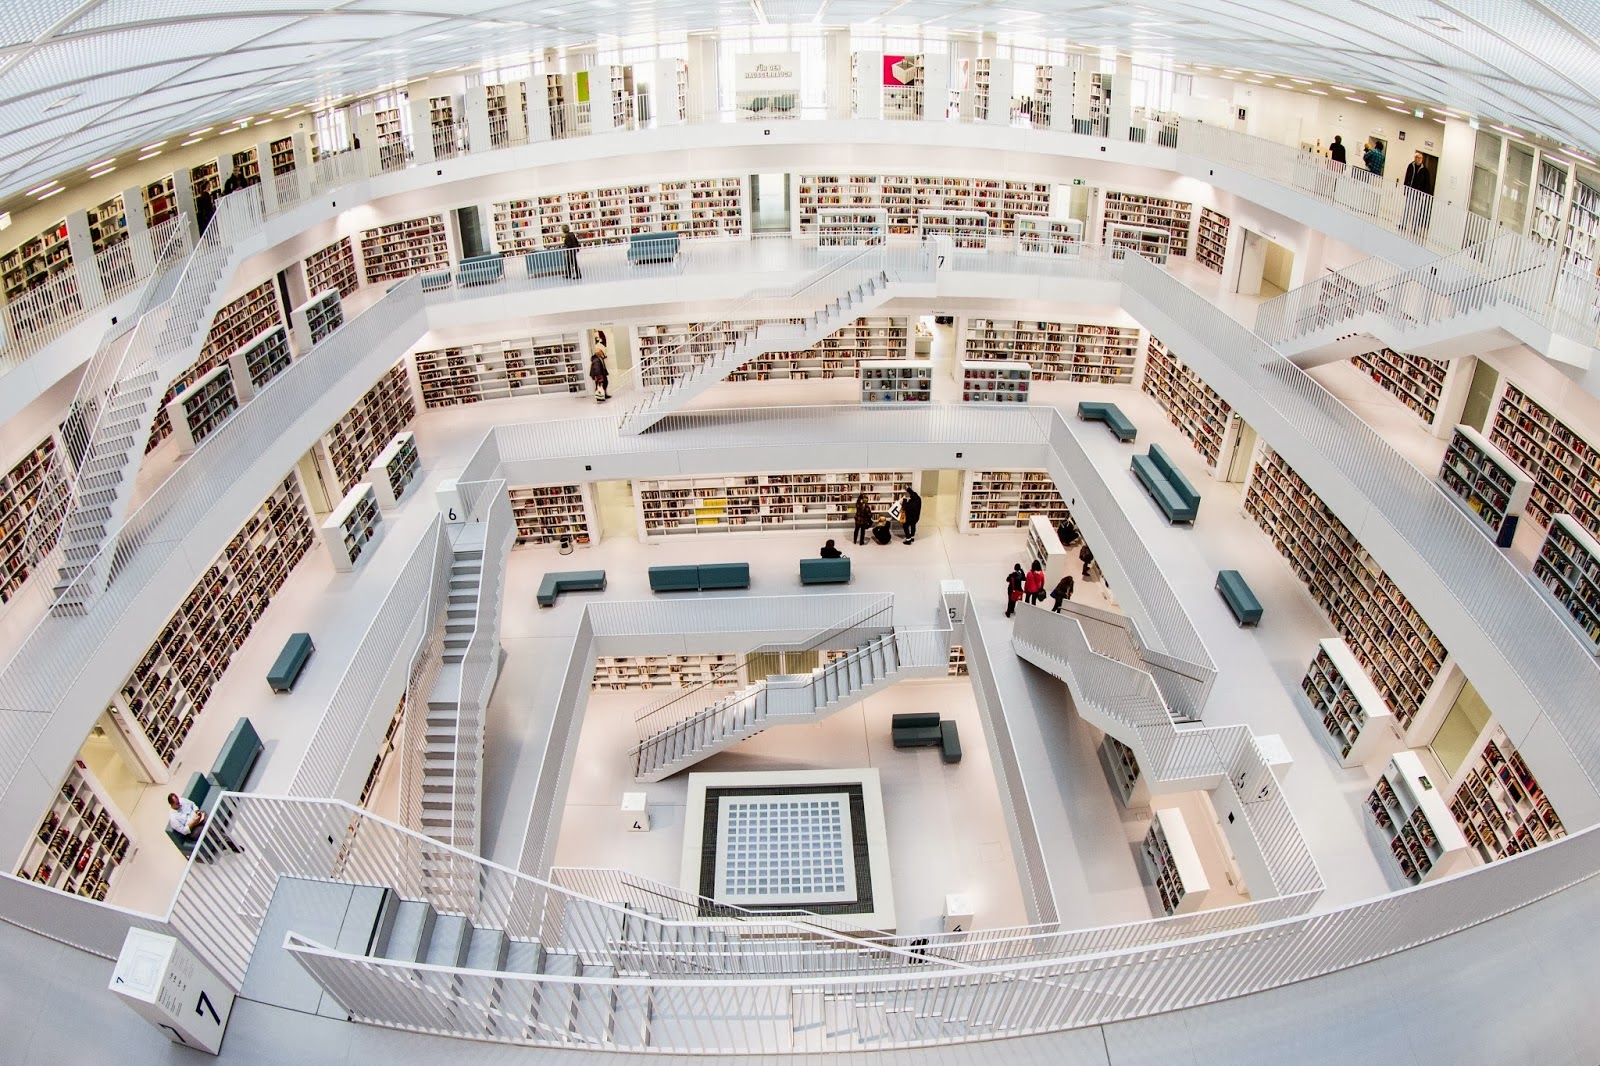  Stuttgart City Library, Stuttgart, Germany